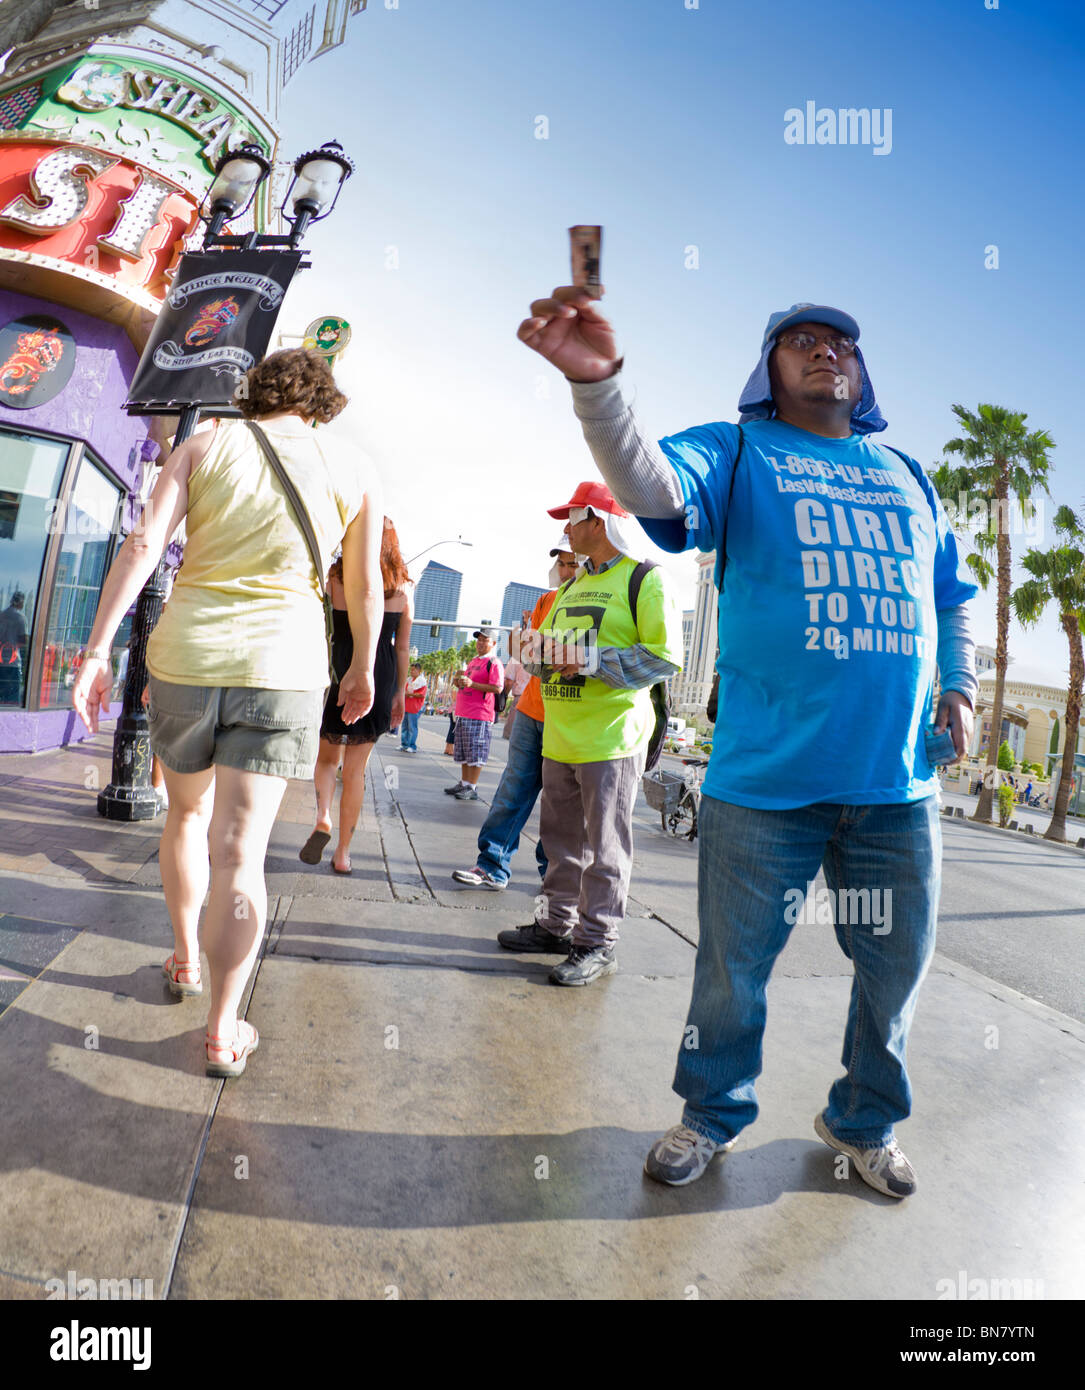 Street scene in Las Vegas Stock Photo